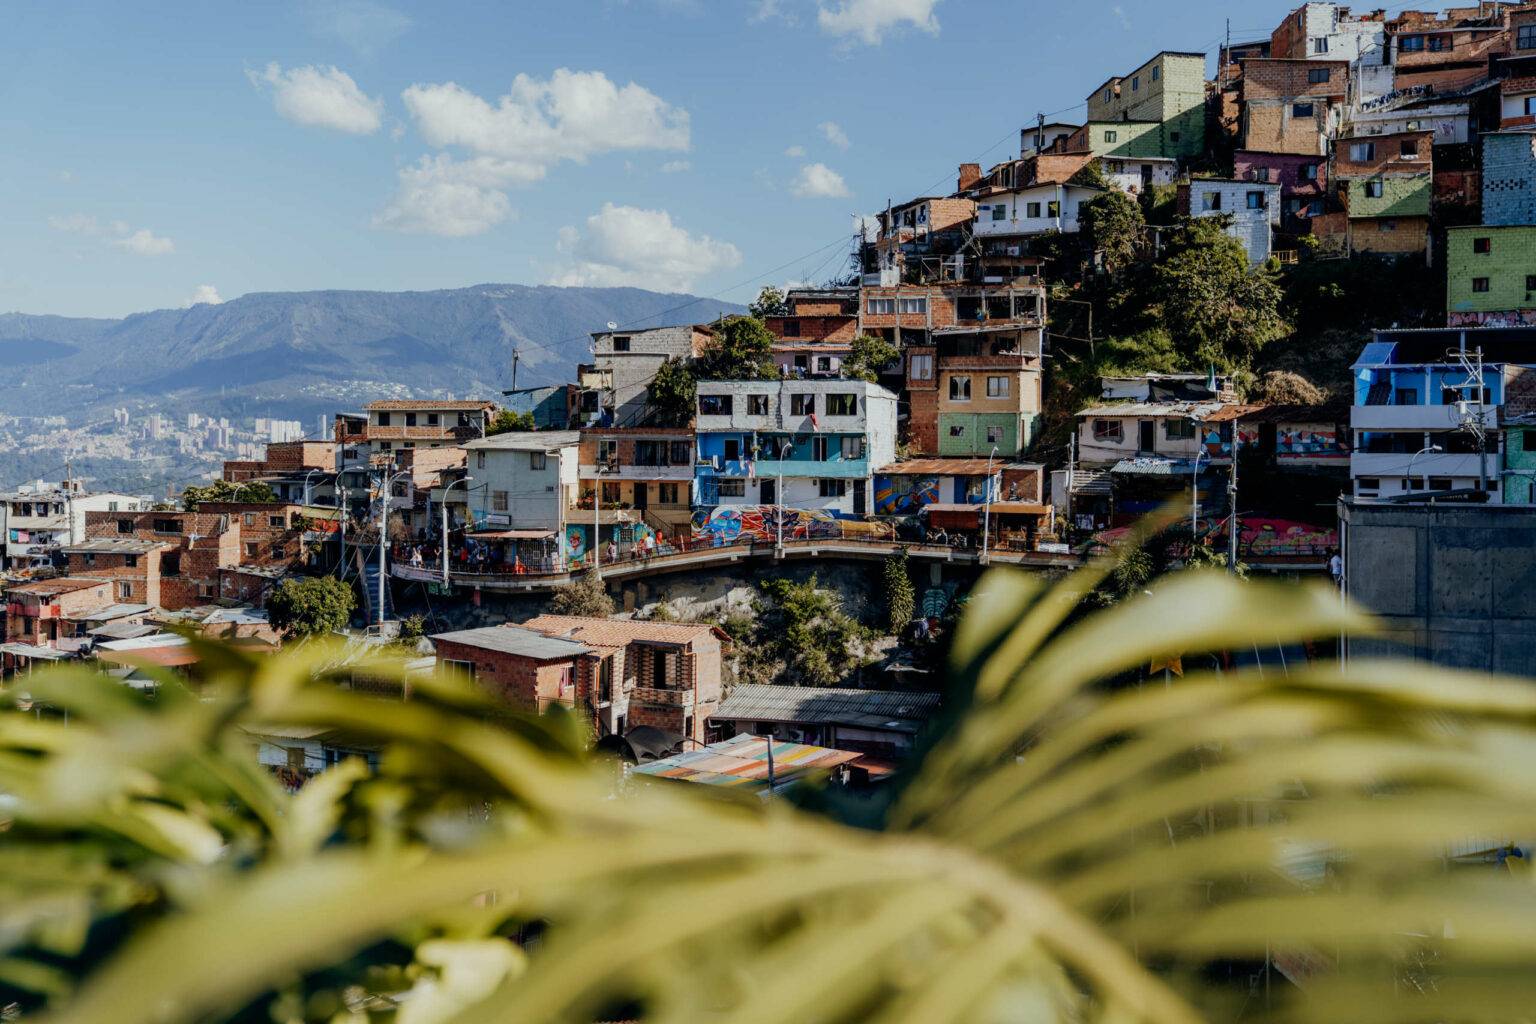 Ausblick auf die Comuna 13 – die einstige No-go-Area der Stadt.